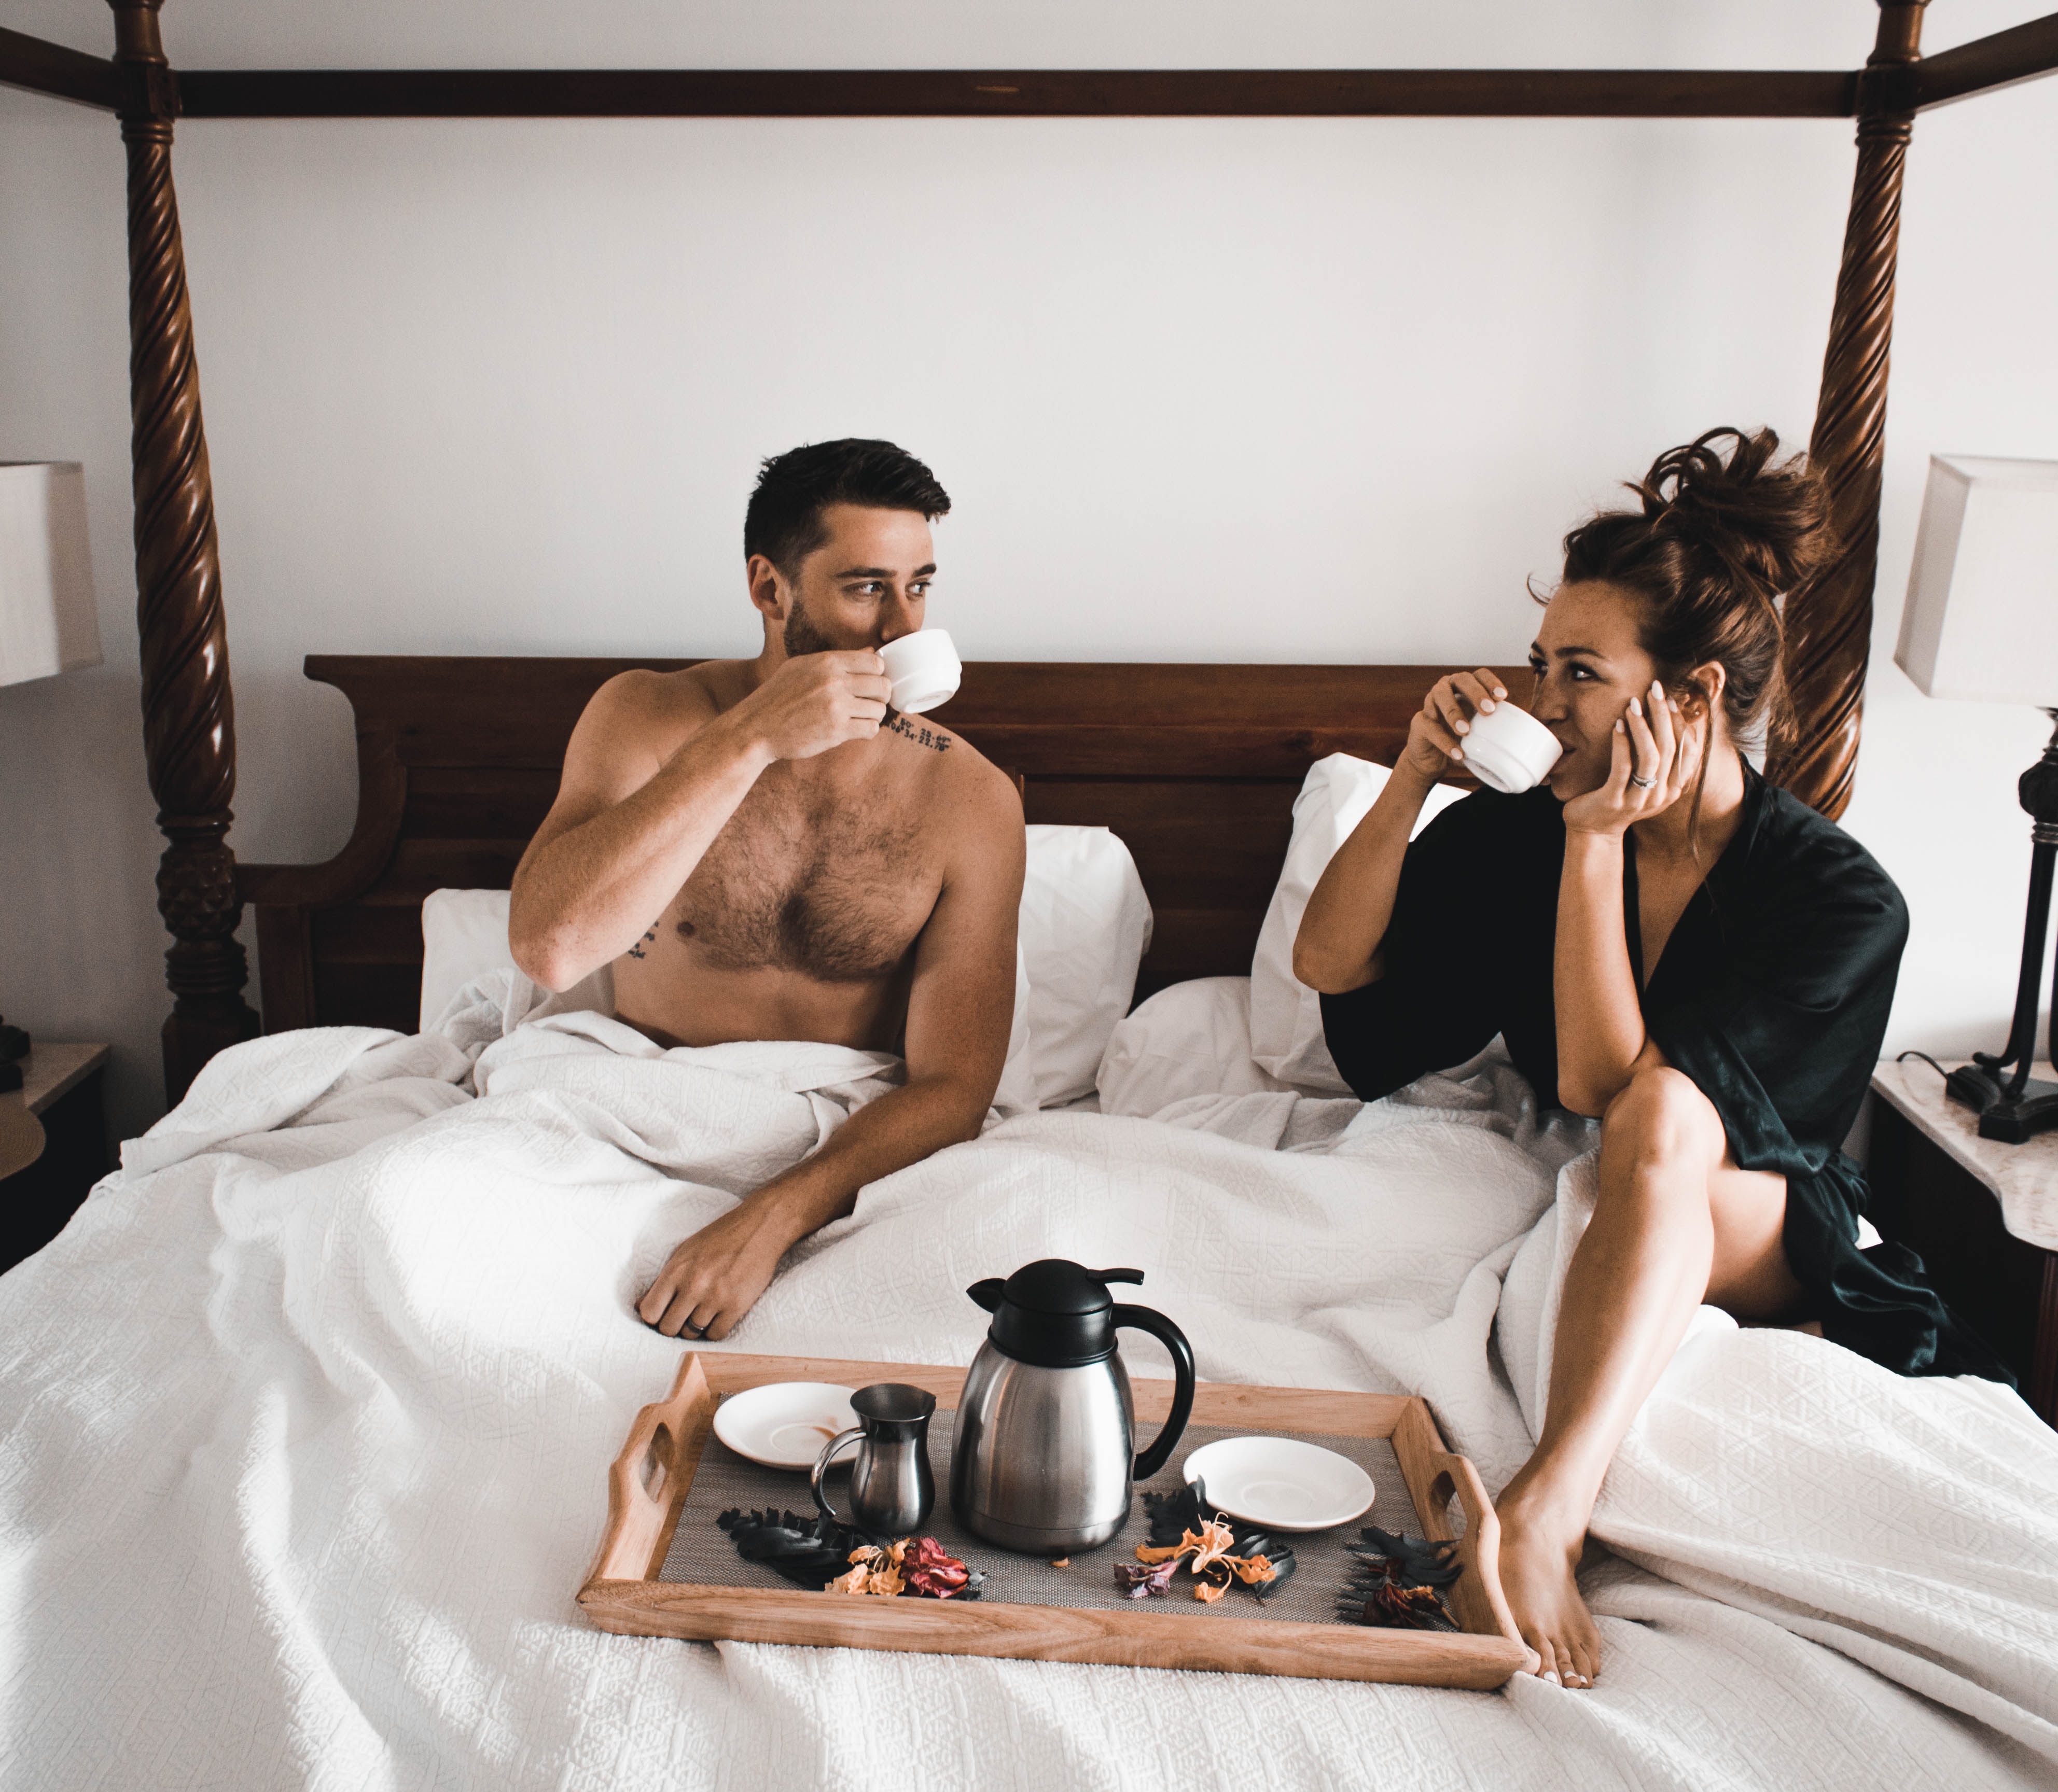 Menos depresión e insomnio: Estos son los beneficios de dormir con tu pareja,  según la ciencia - Meganoticias